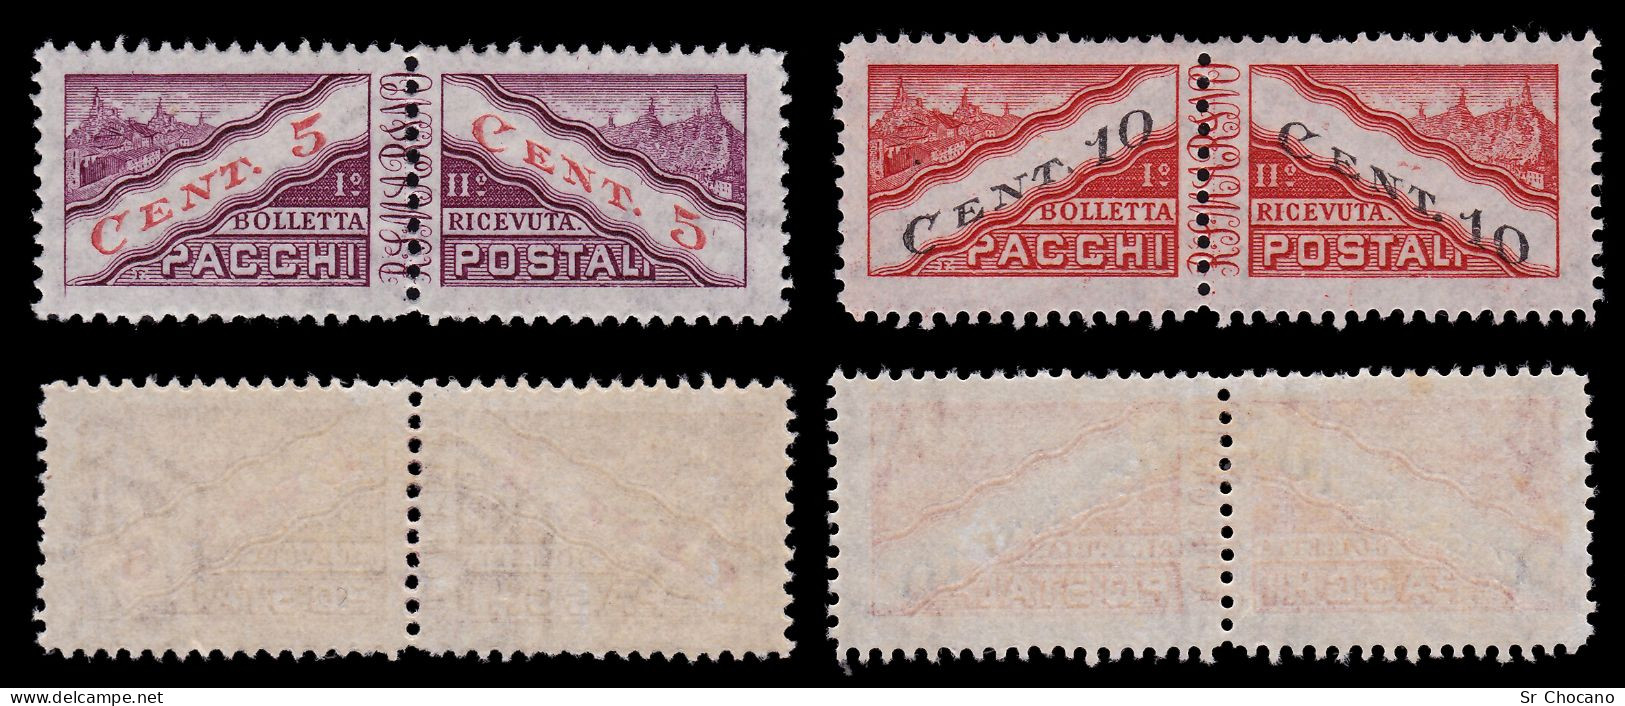 SAN MARINO PARCEL POST STAMPS.1945/6.SCOTT Q16-Q23.MH. - Unused Stamps